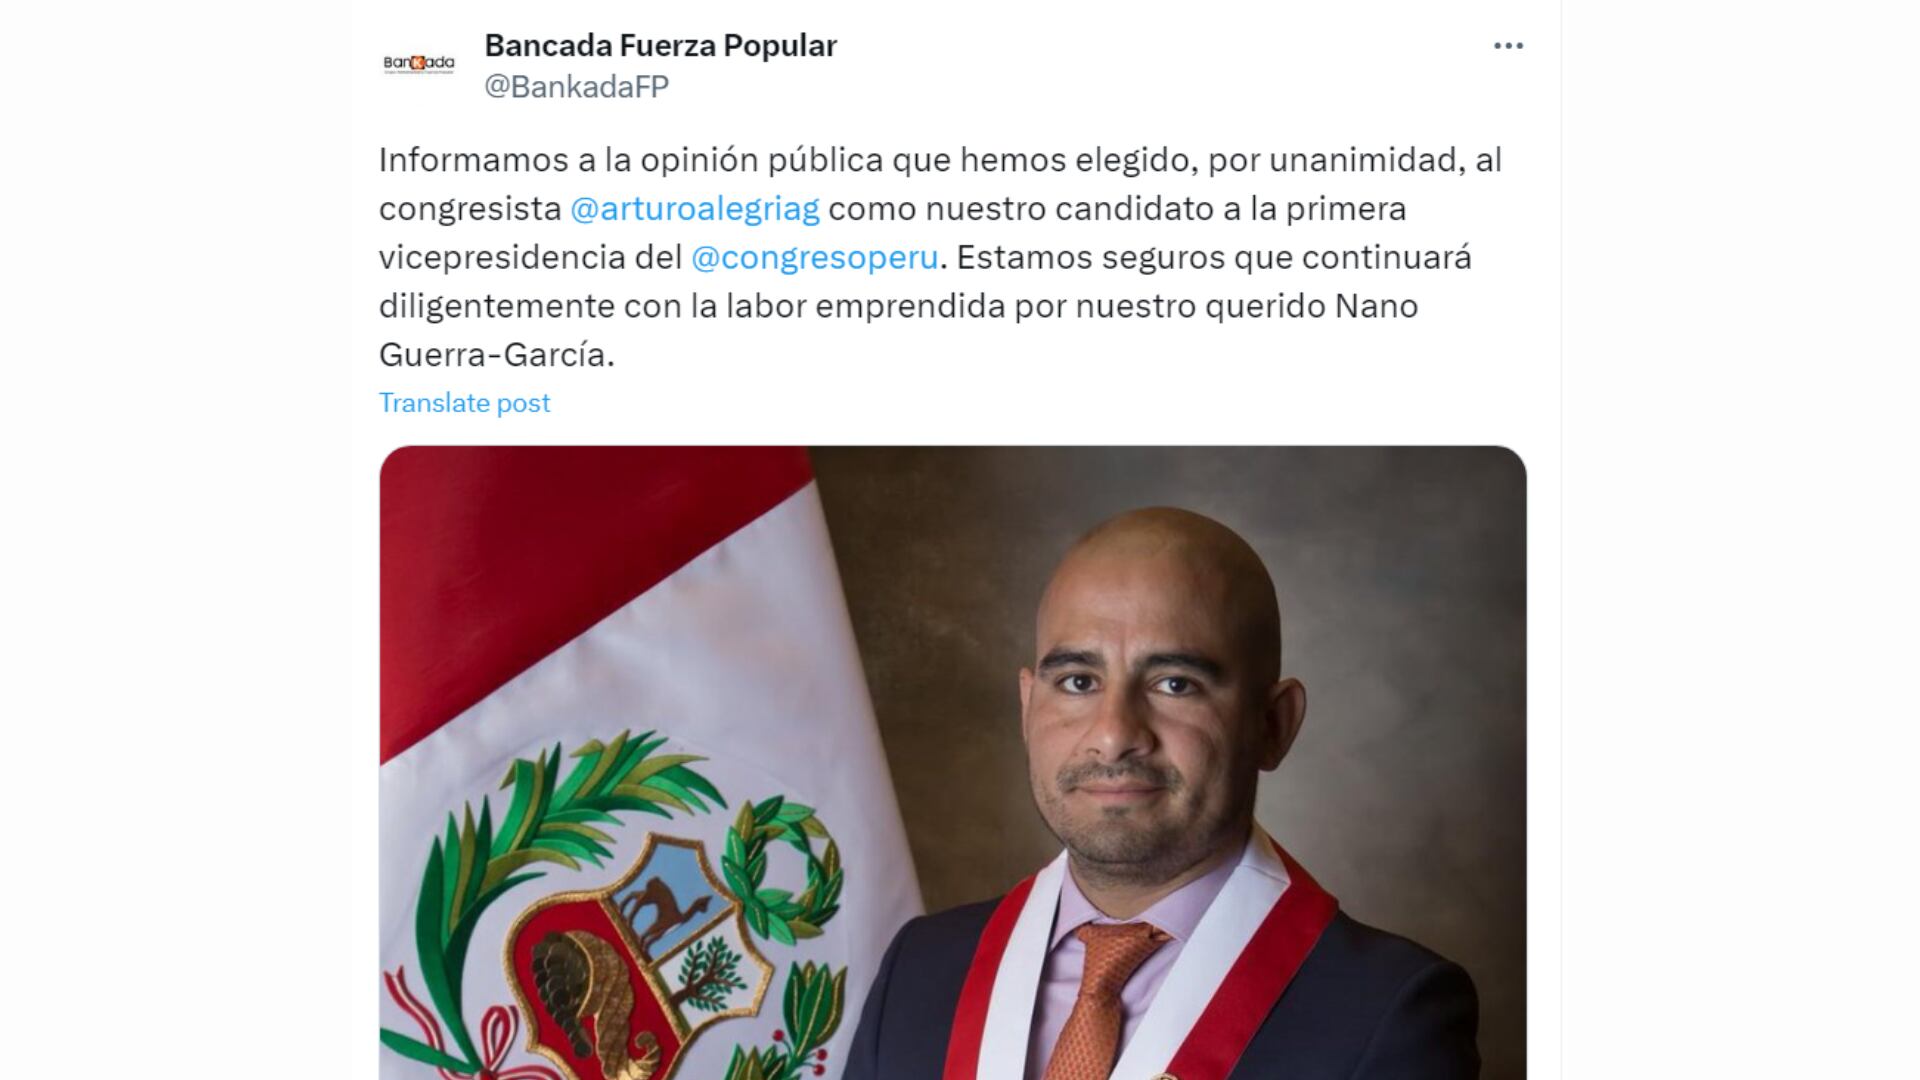 Bancada de Fuerza Popular elige a Arturo Alegría como candidato para primer vicepresidente del Congreso| Twitter Fuerza Popular